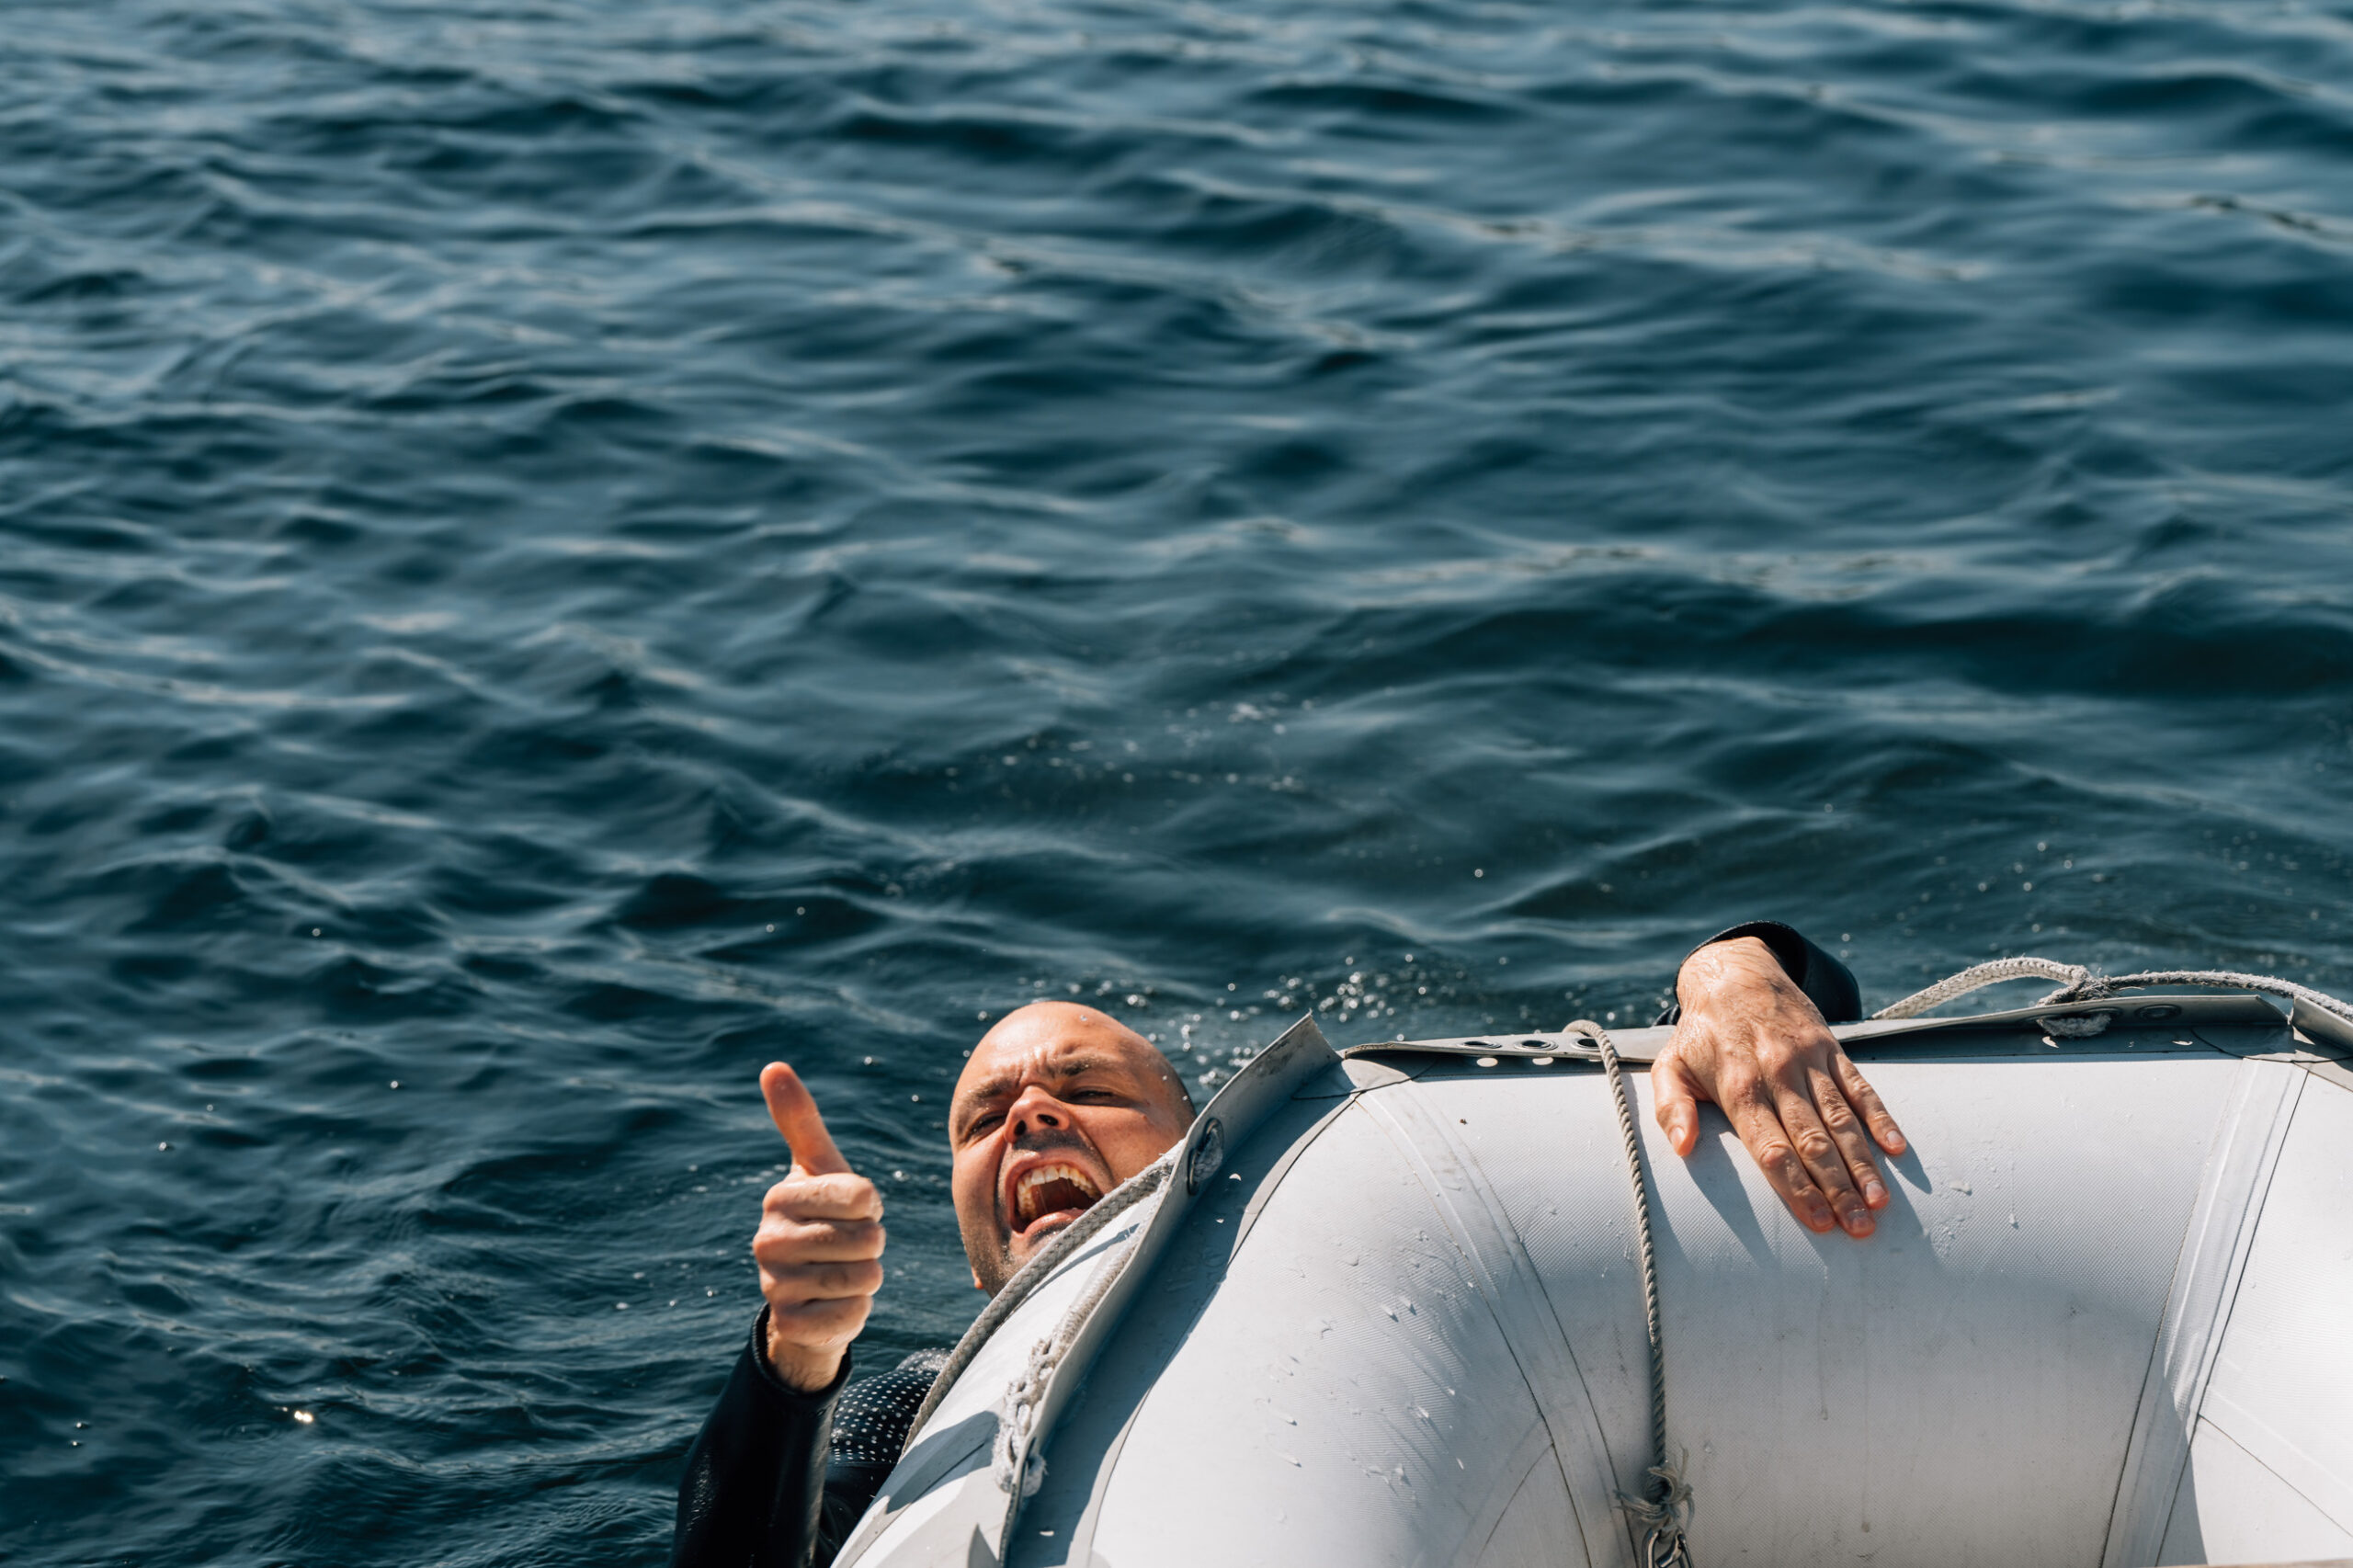 Lars Berrum gir tommel opp i vannet. Bilde tatt i forbindelse med filming av opplysningsfilm om drukning.